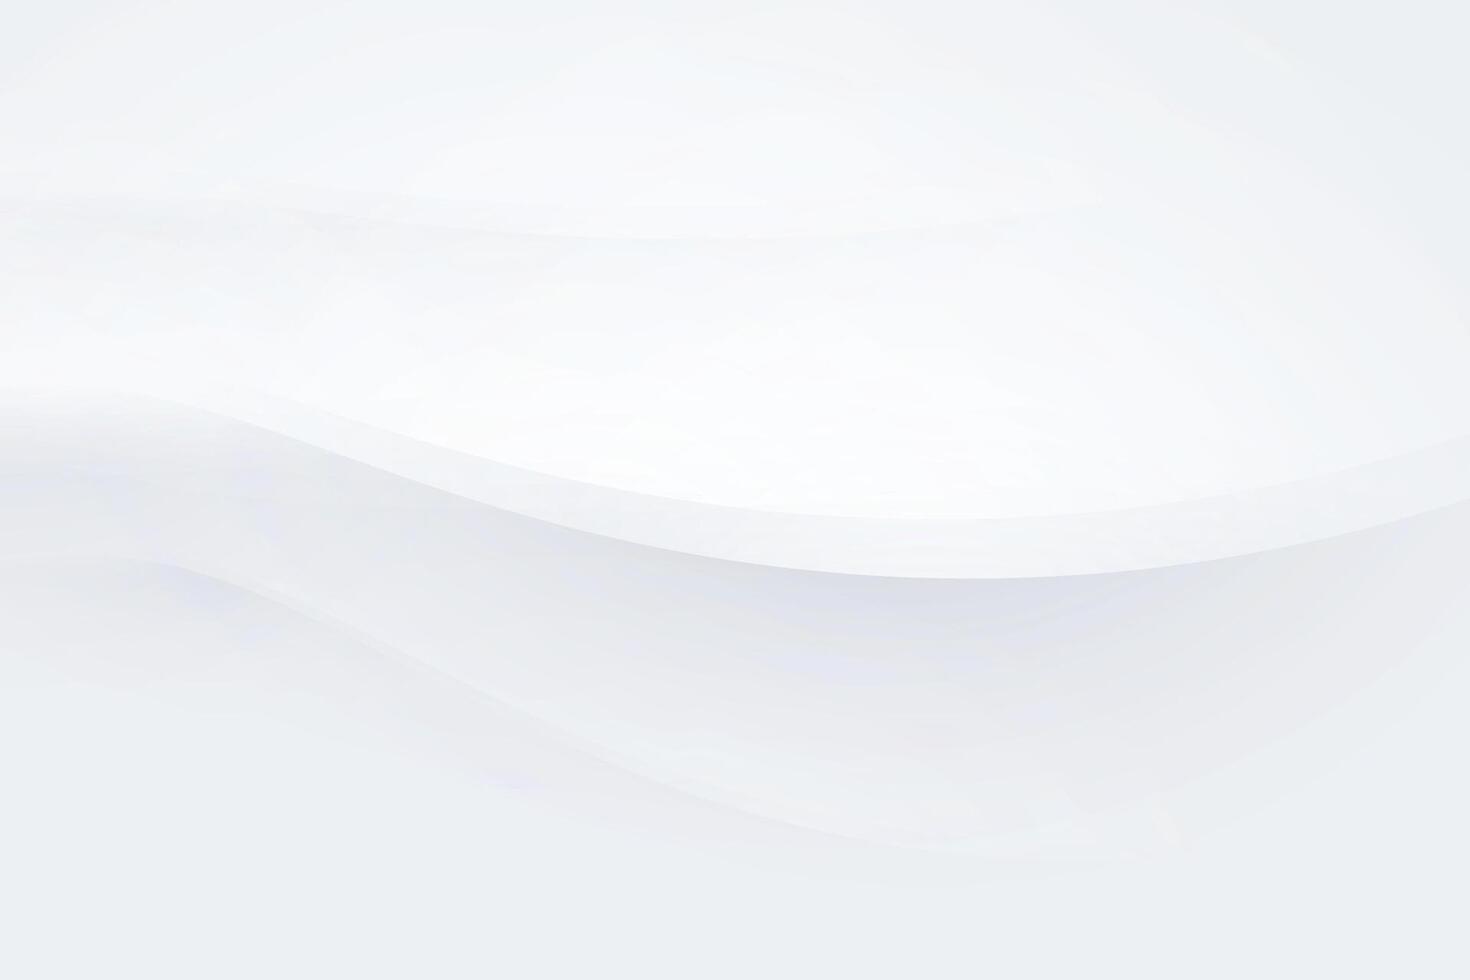 lisse et vide minimal blanc neumorphique fond d'écran pour présentation vecteur